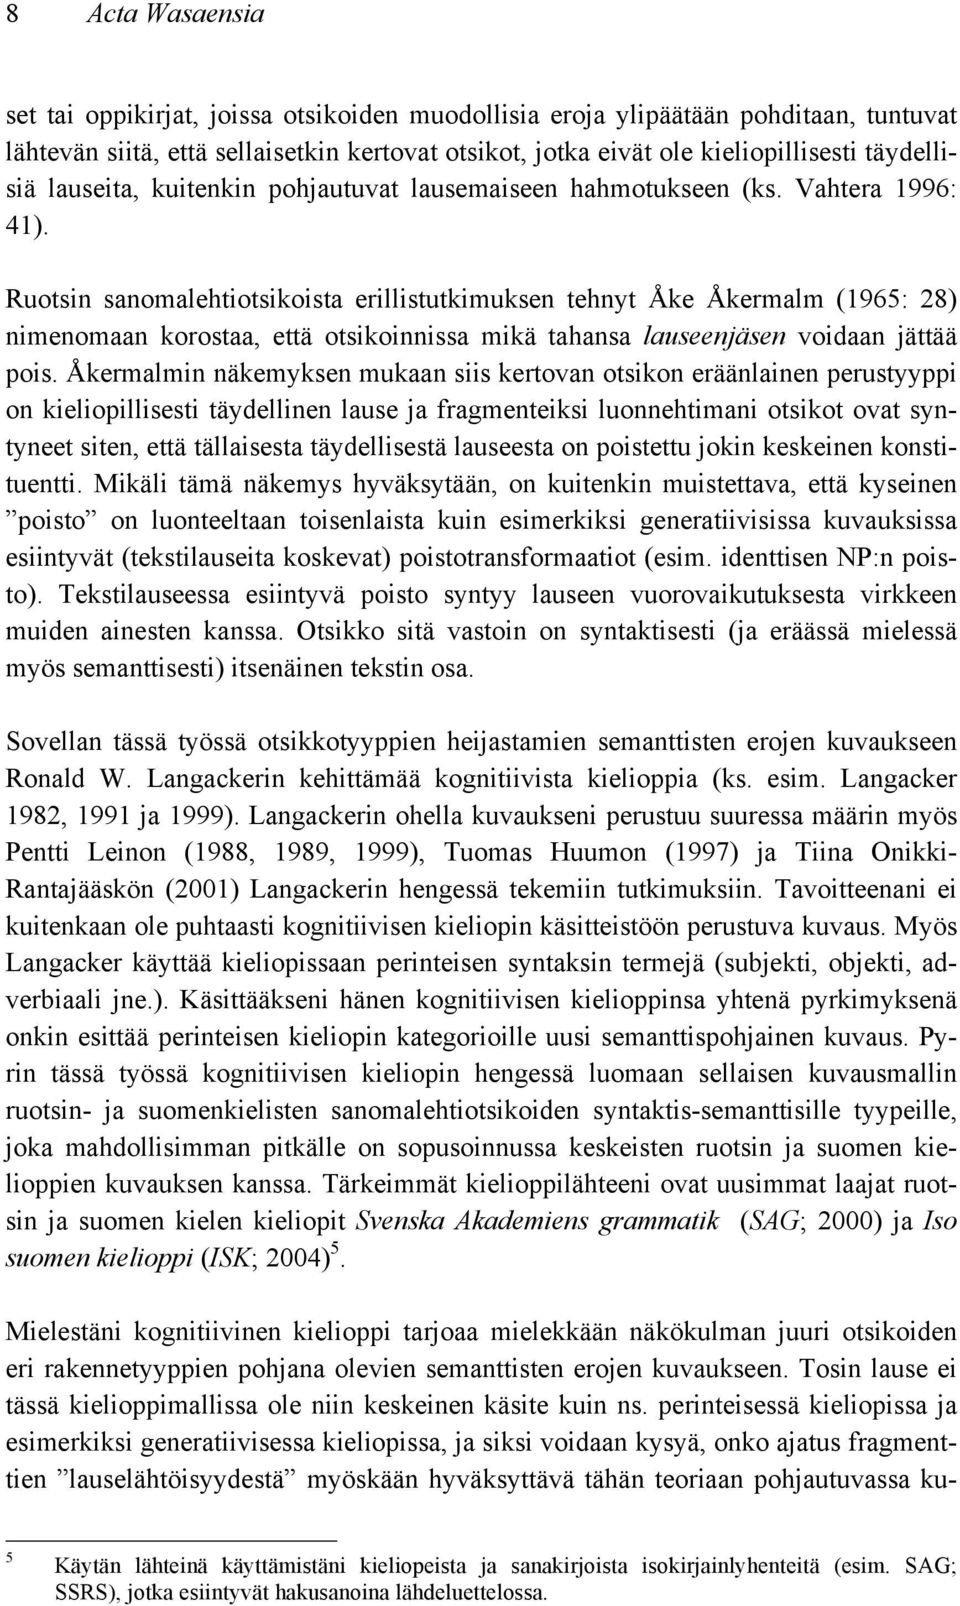 Ruotsin sanomalehtiotsikoista erillistutkimuksen tehnyt Åke Åkermalm (1965: 28) nimenomaan korostaa, että otsikoinnissa mikä tahansa lauseenjäsen voidaan jättää pois.